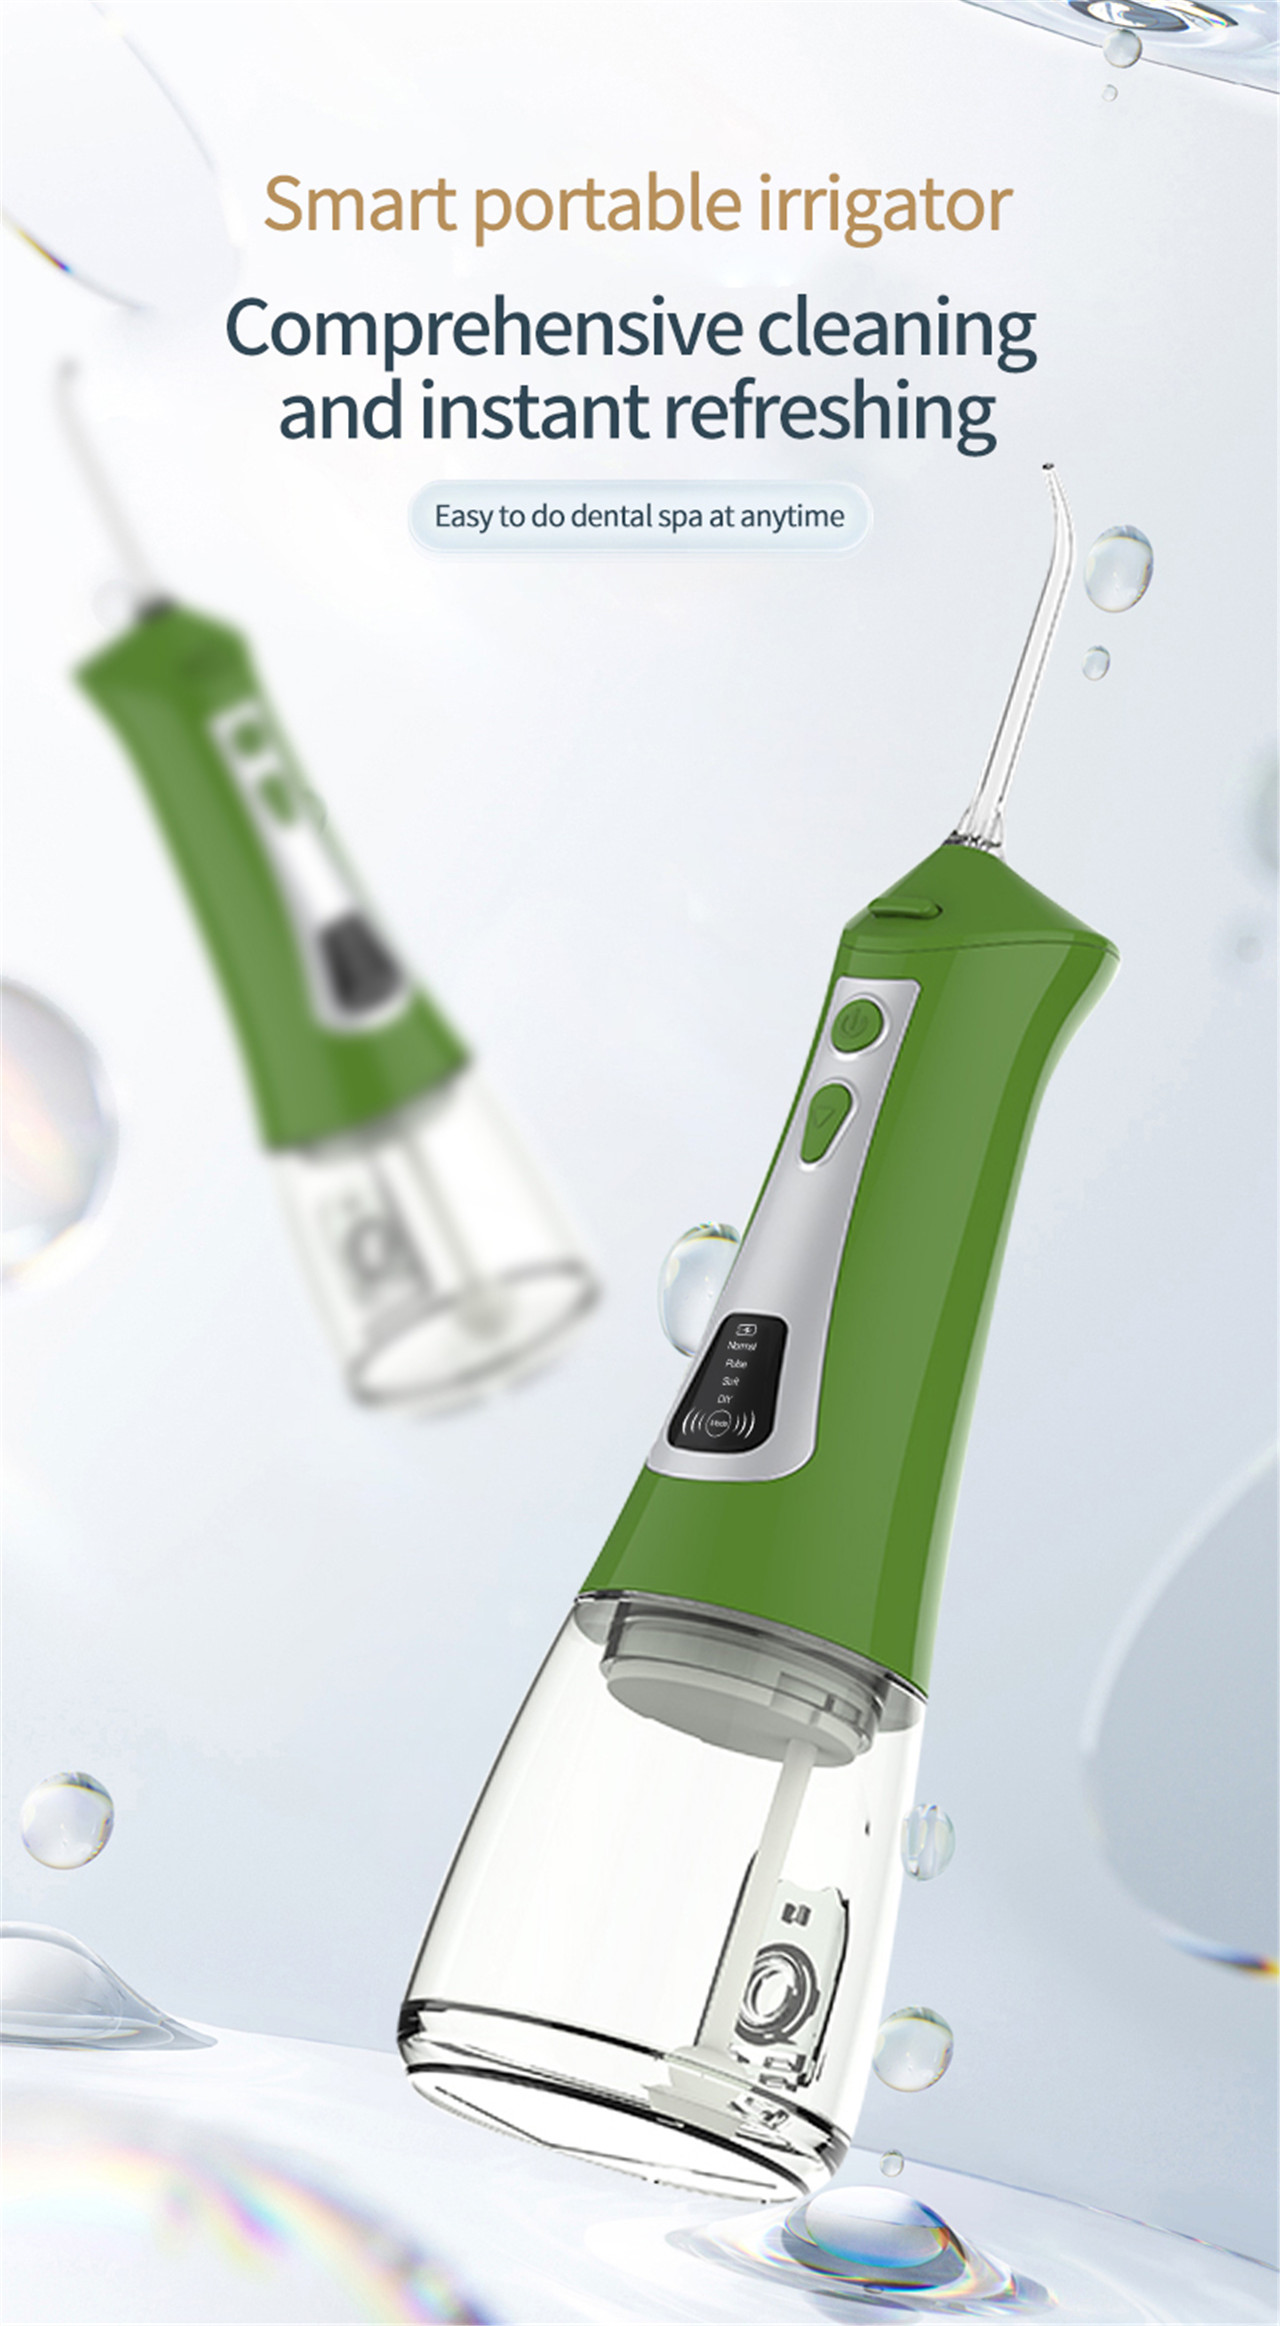 Recolector de agua para irrigador bucal con pantalla OLED para blanqueamiento dental (1)